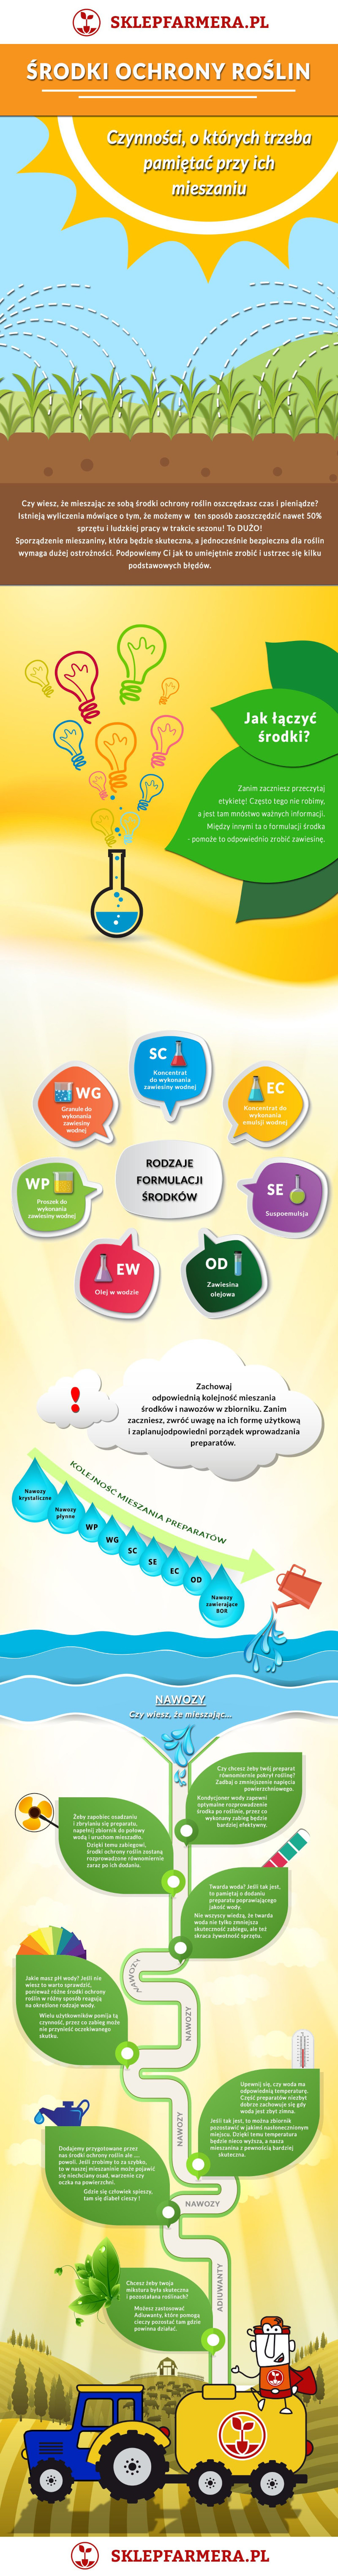 Sposoby mieszania nawozów dolistnych i środków ochrony roślin - Infografika | Blog Sklepfarmera.pl